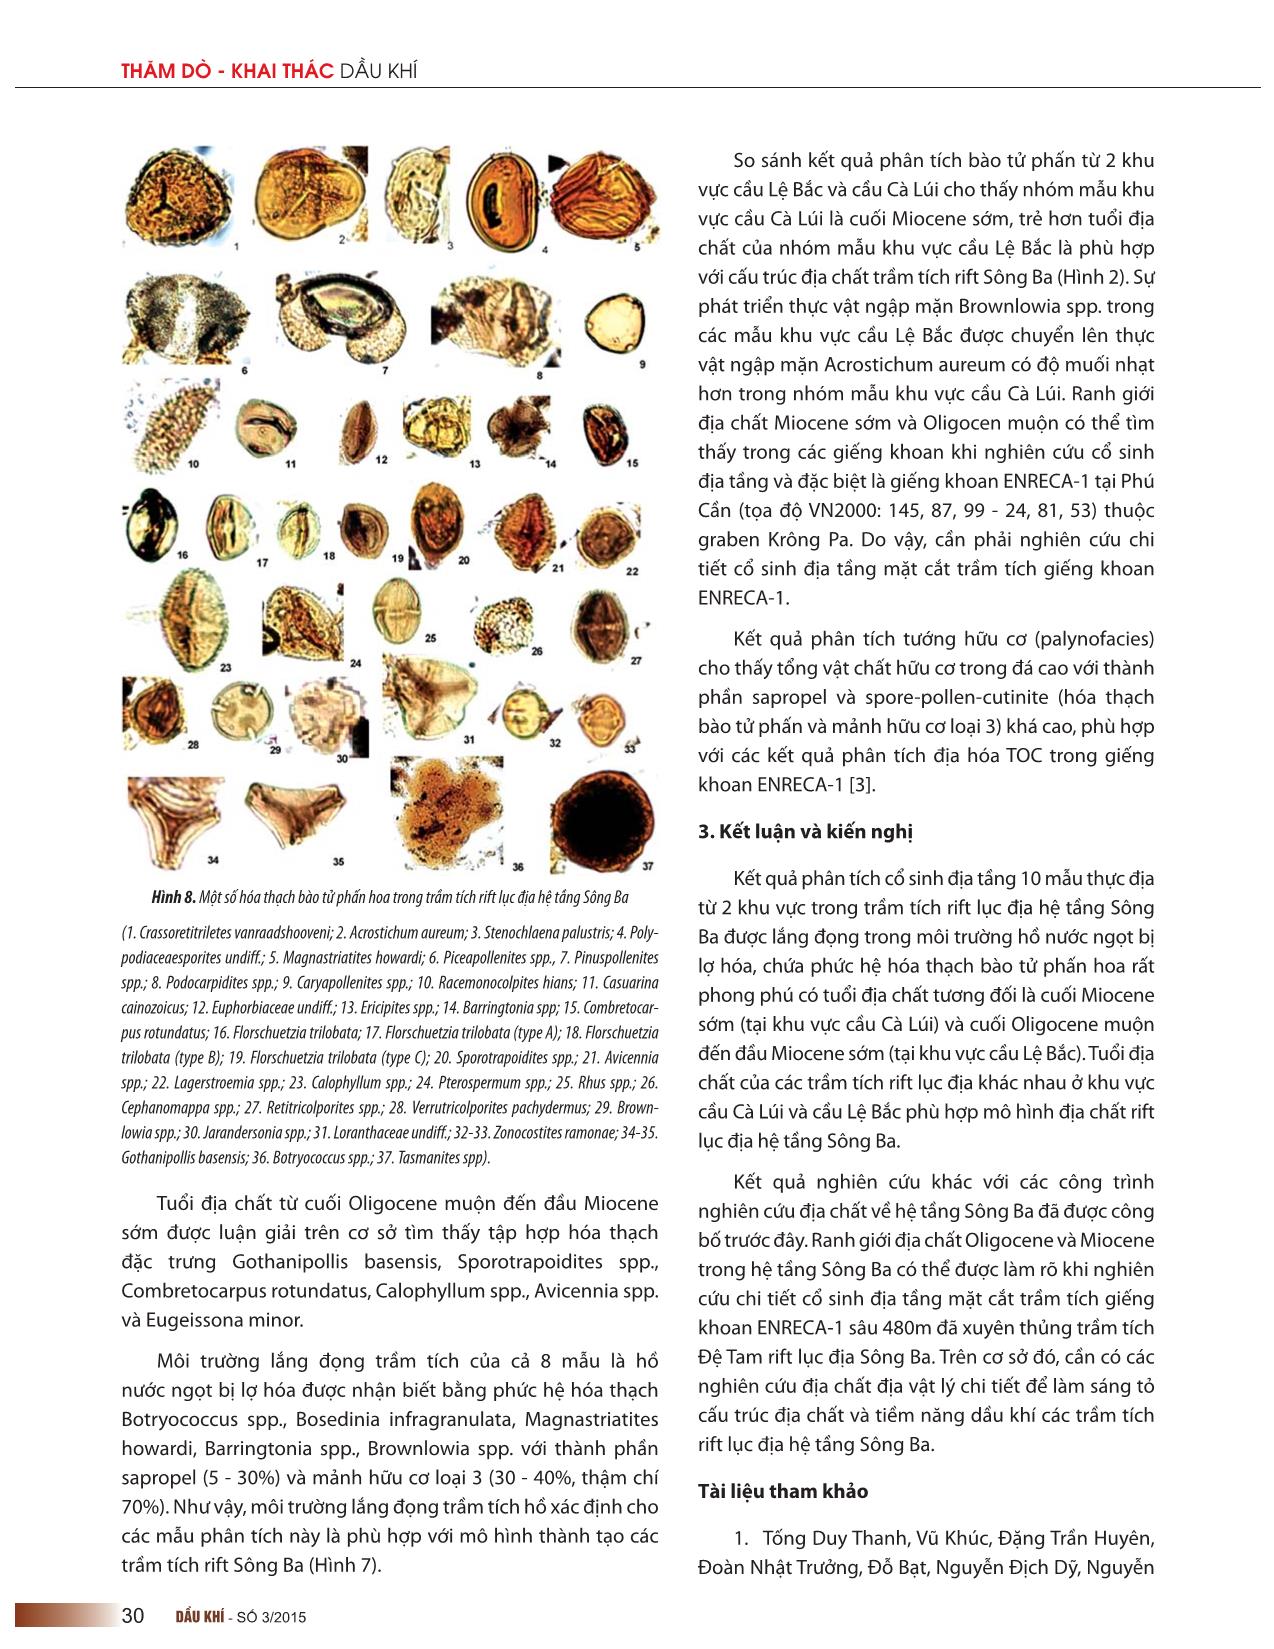 Phức hệ hóa thạch bào tử phấn hoa trong trầm tích rift lục địa hệ tầng sông ba trang 4